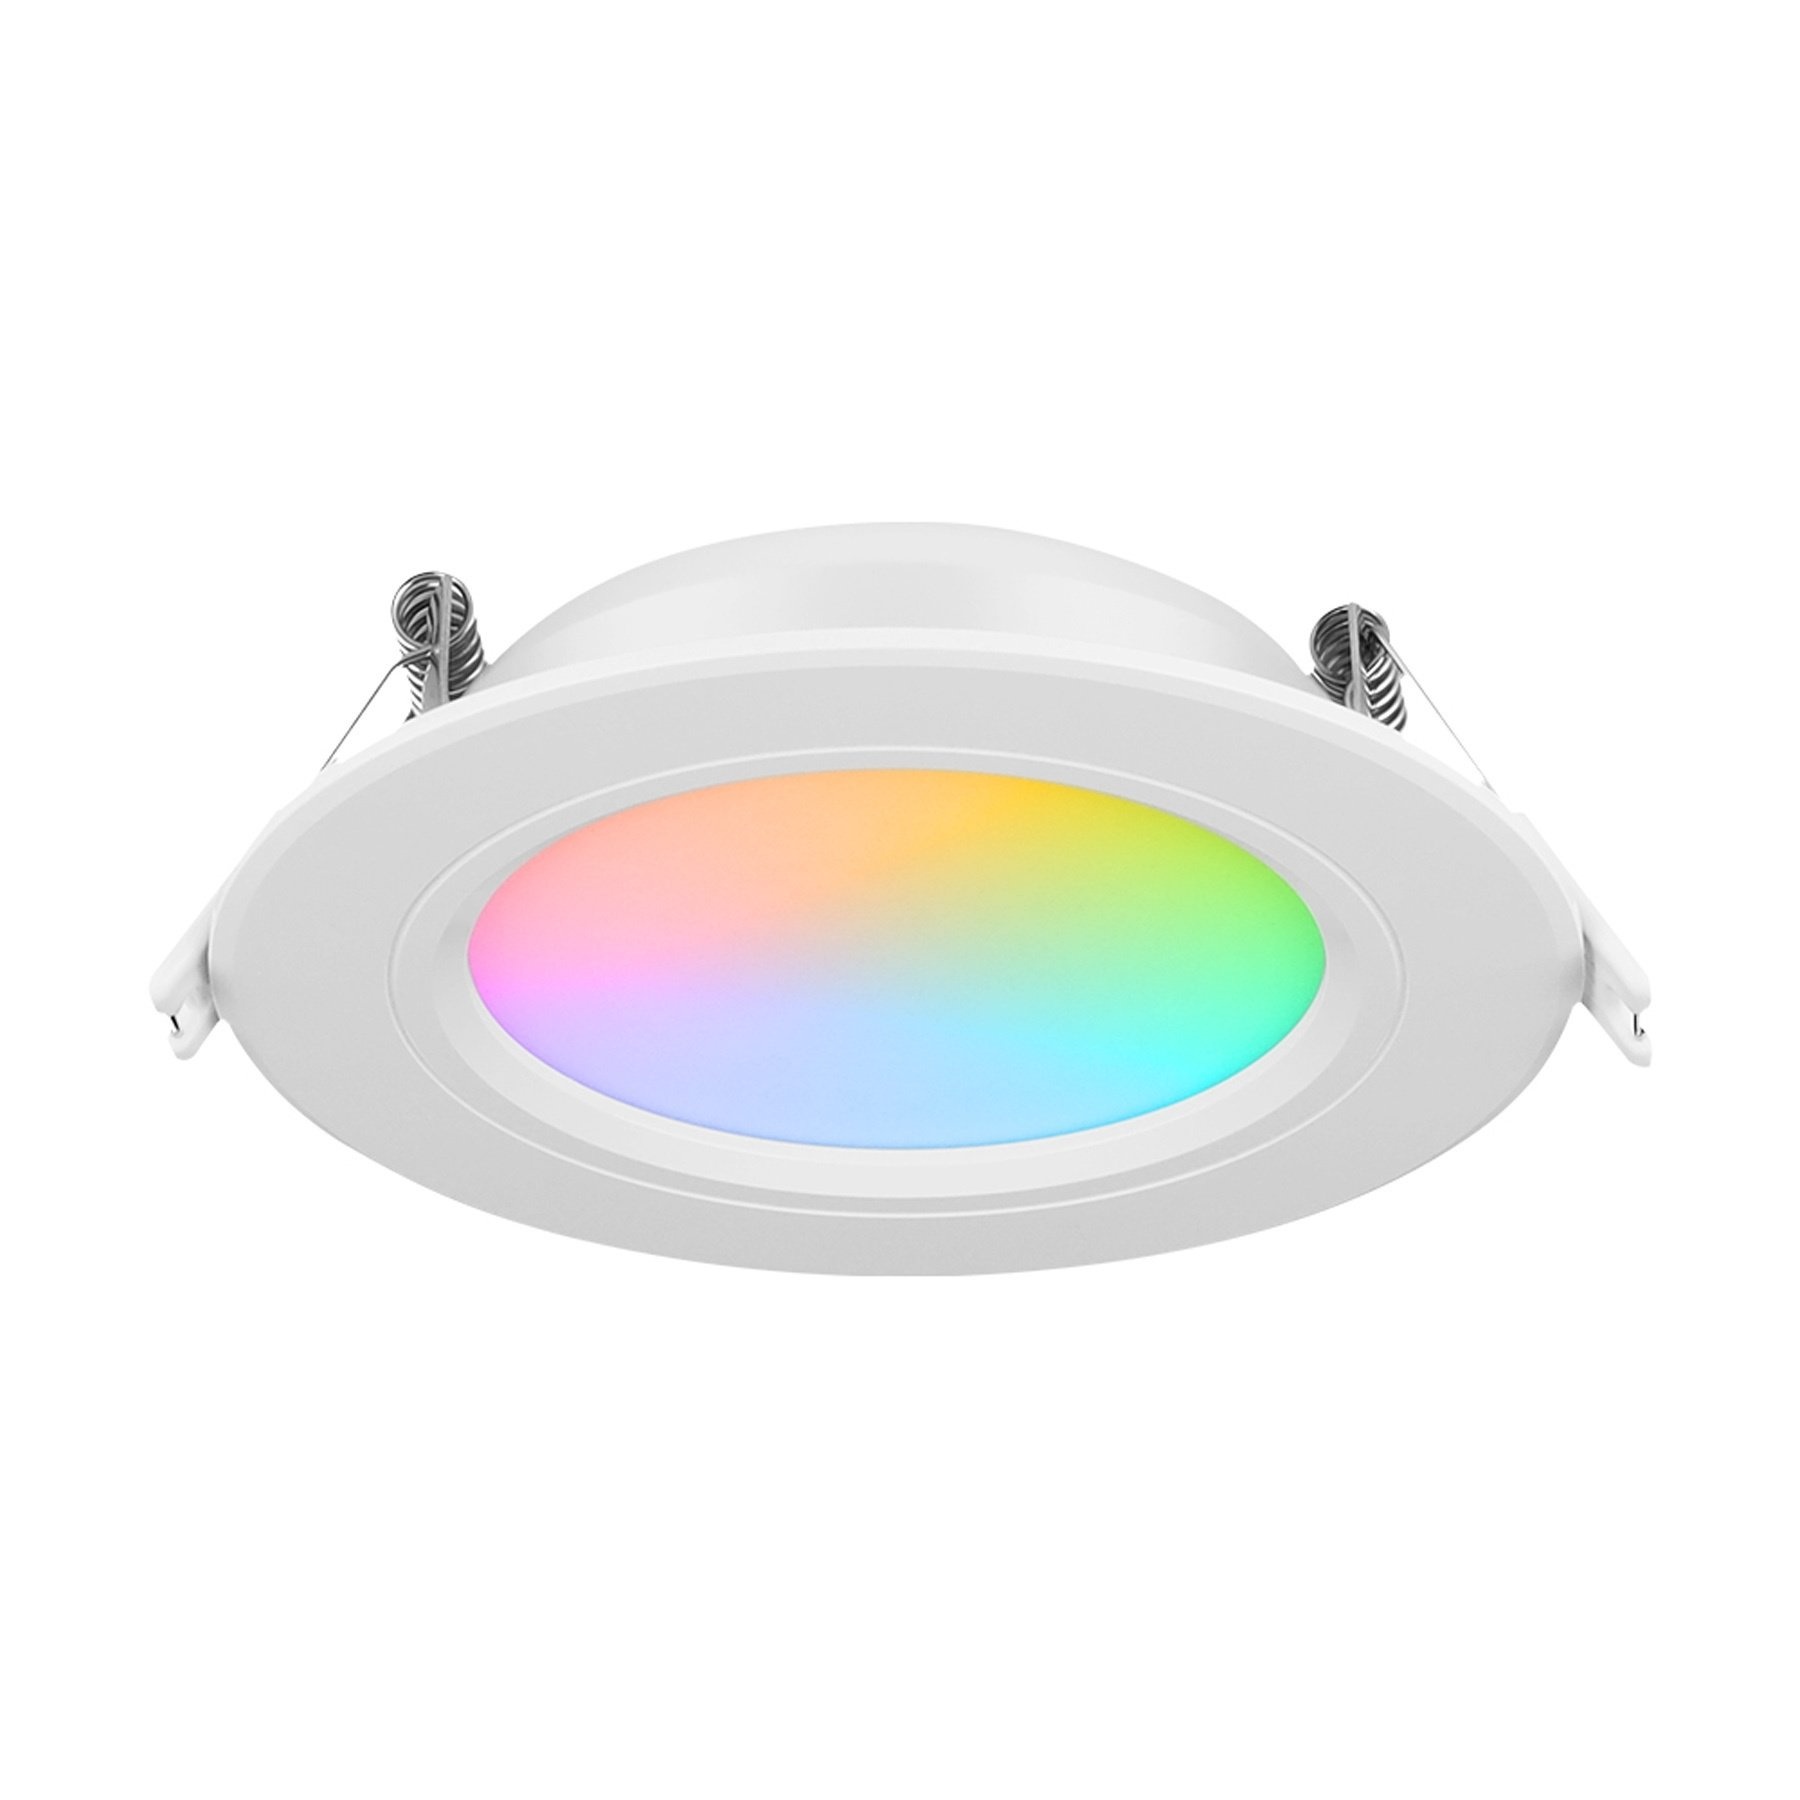 Ampoule LED connectée RGB+CCT E27 6W Mi-Light (MiBOXER)